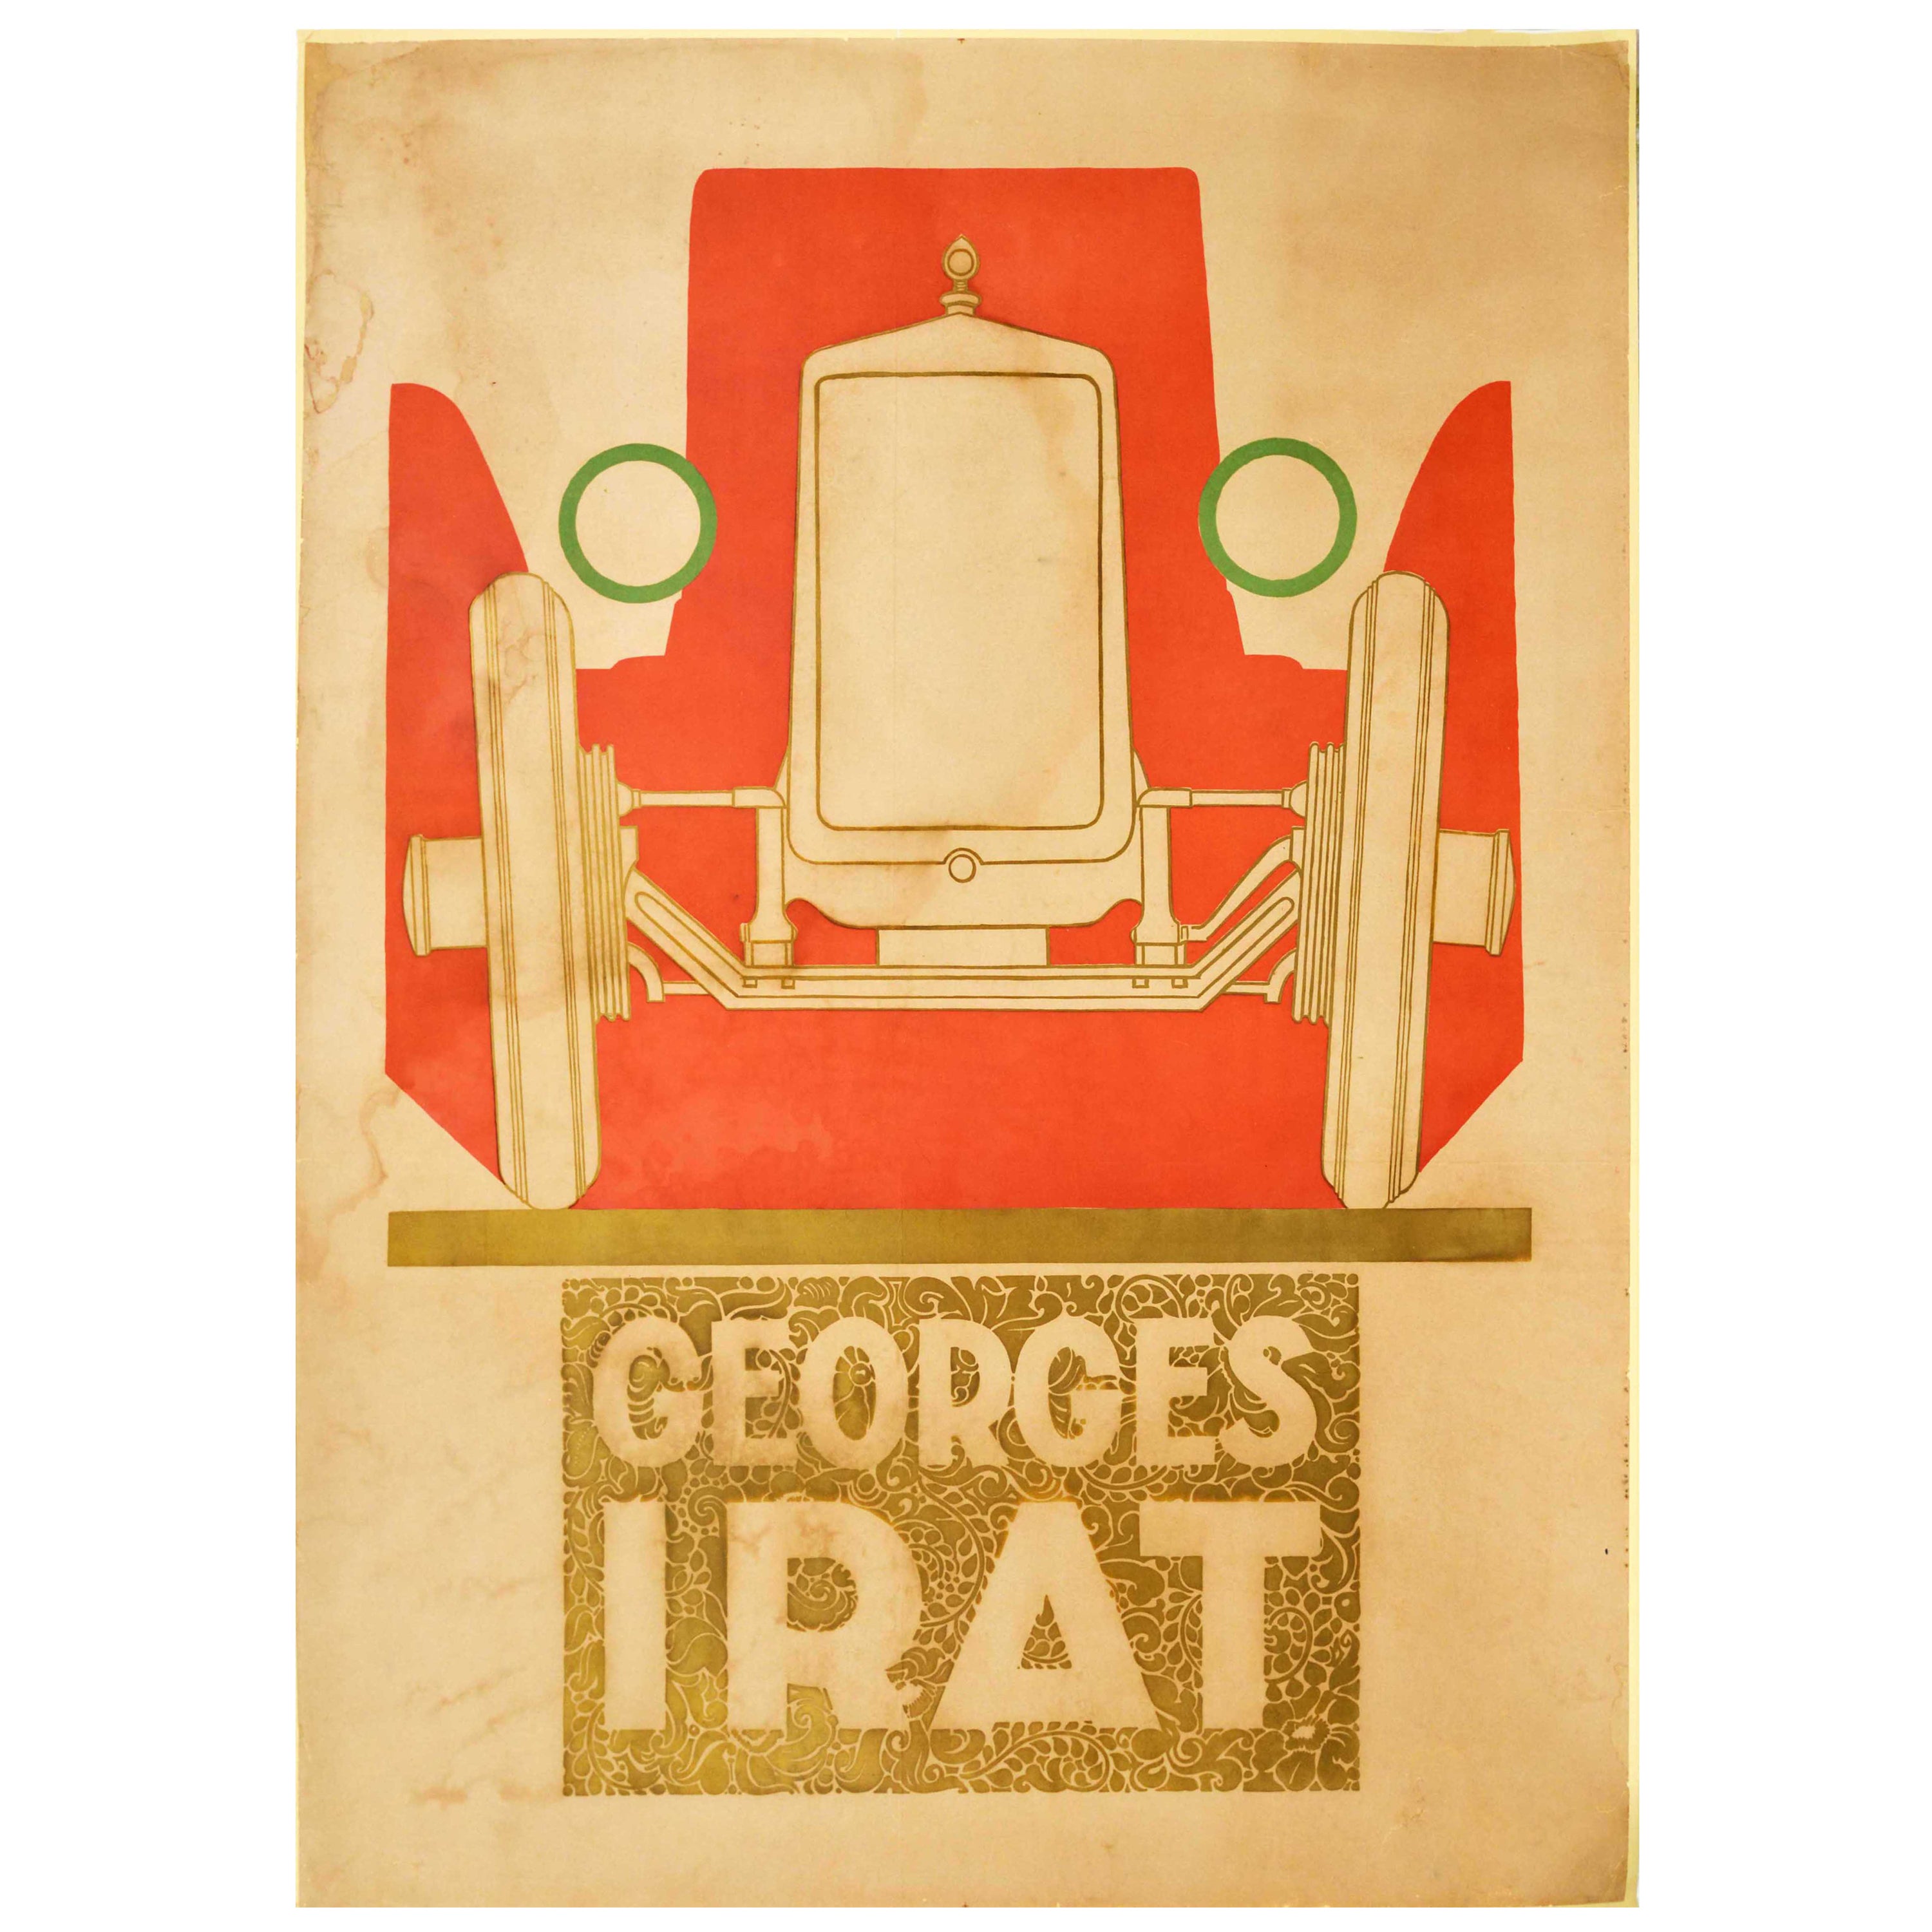 Original Rare Antique Advertising Poster Georges Irat Automobiles Art Deco Car For Sale